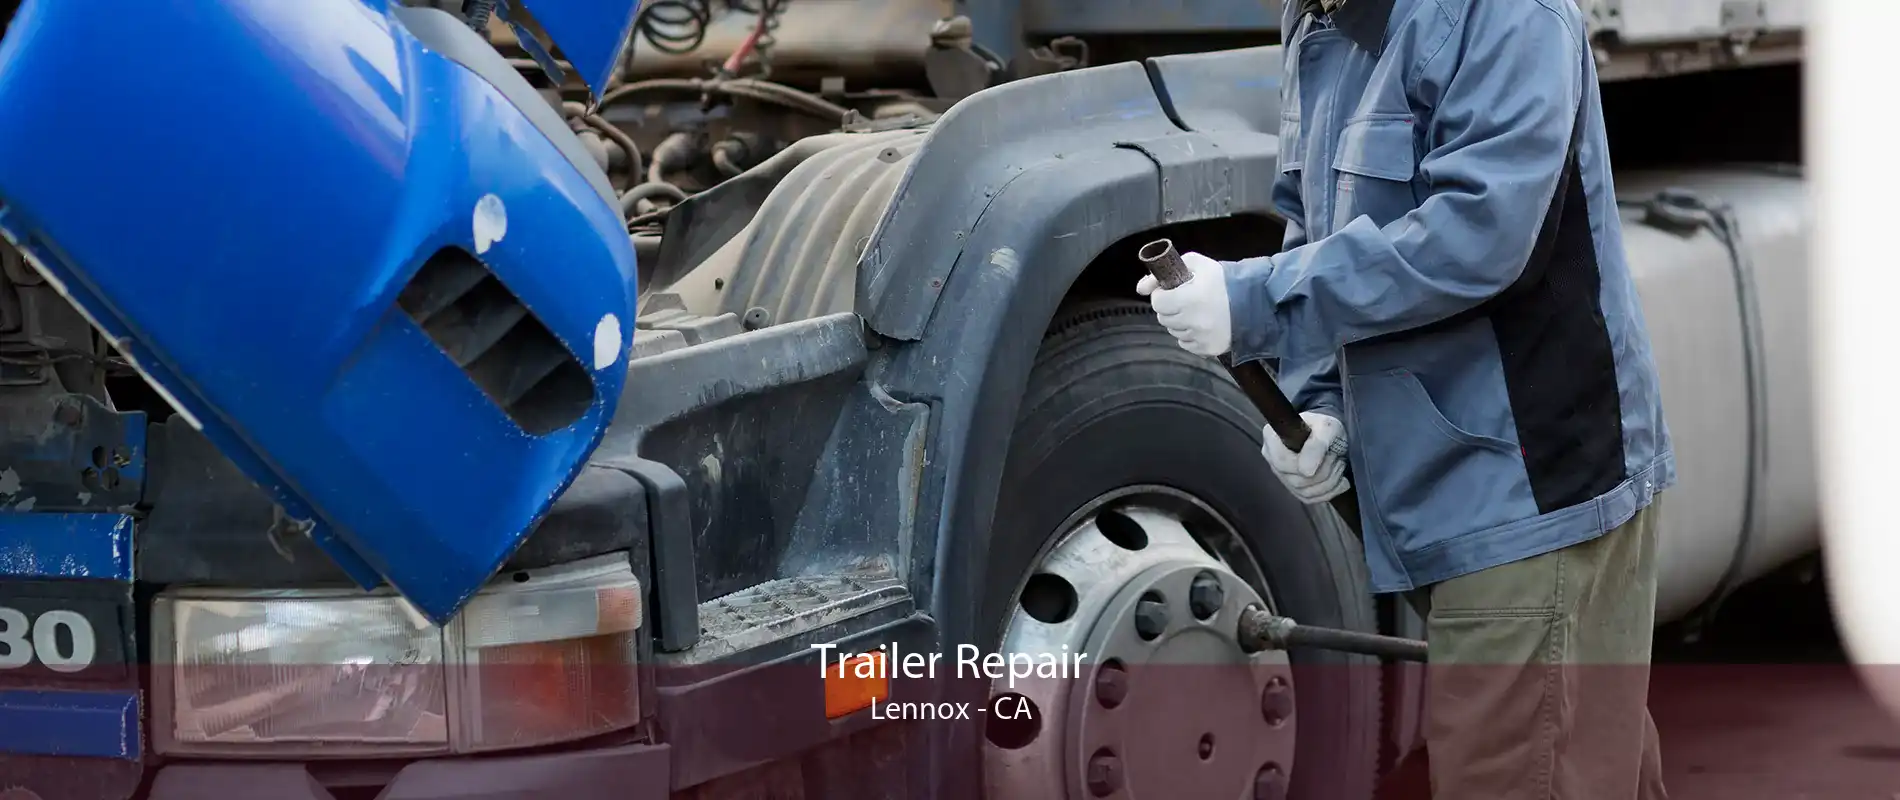 Trailer Repair Lennox - CA